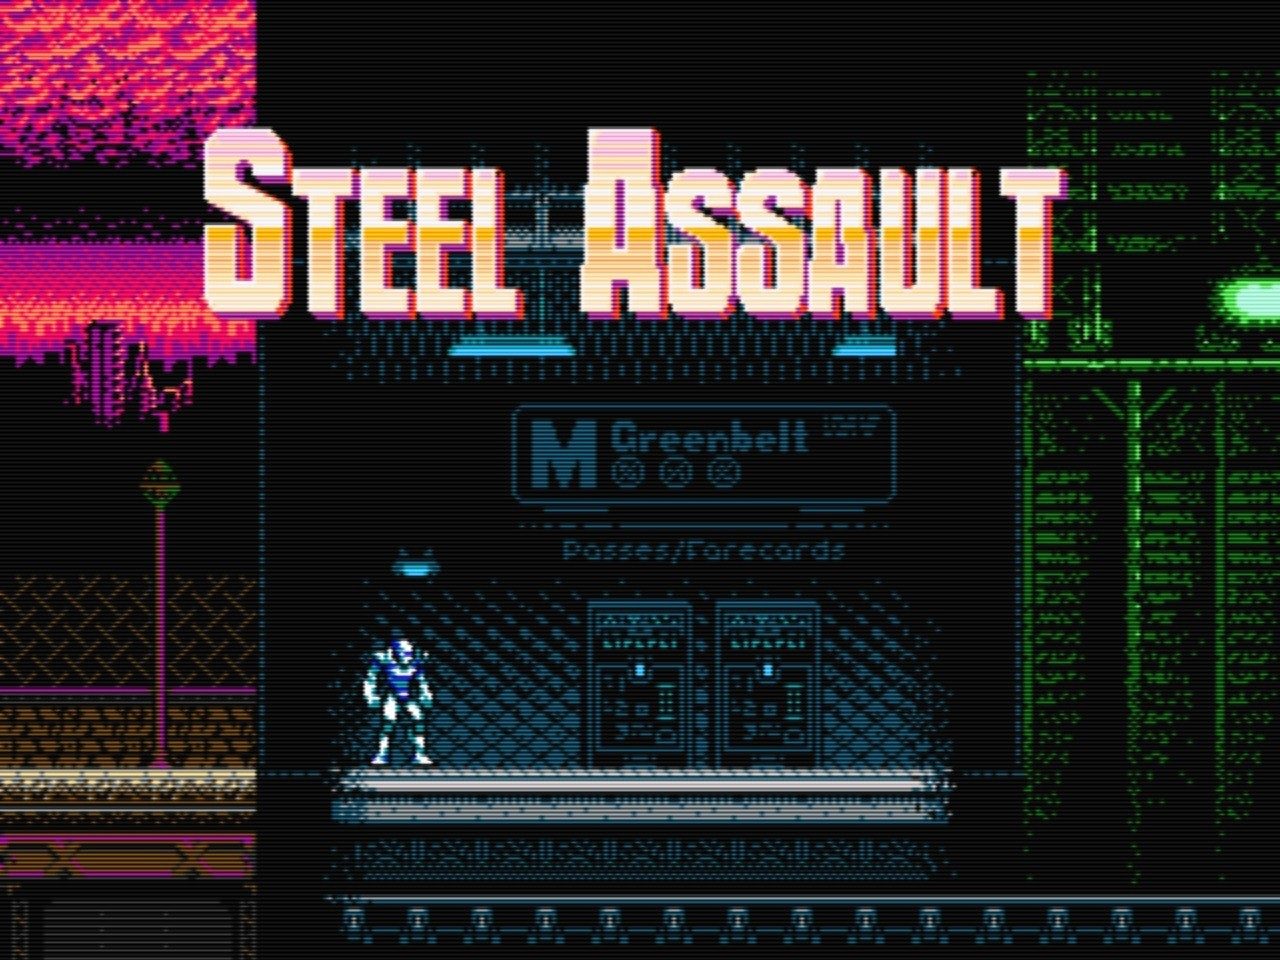 steel-assault-1.jpg